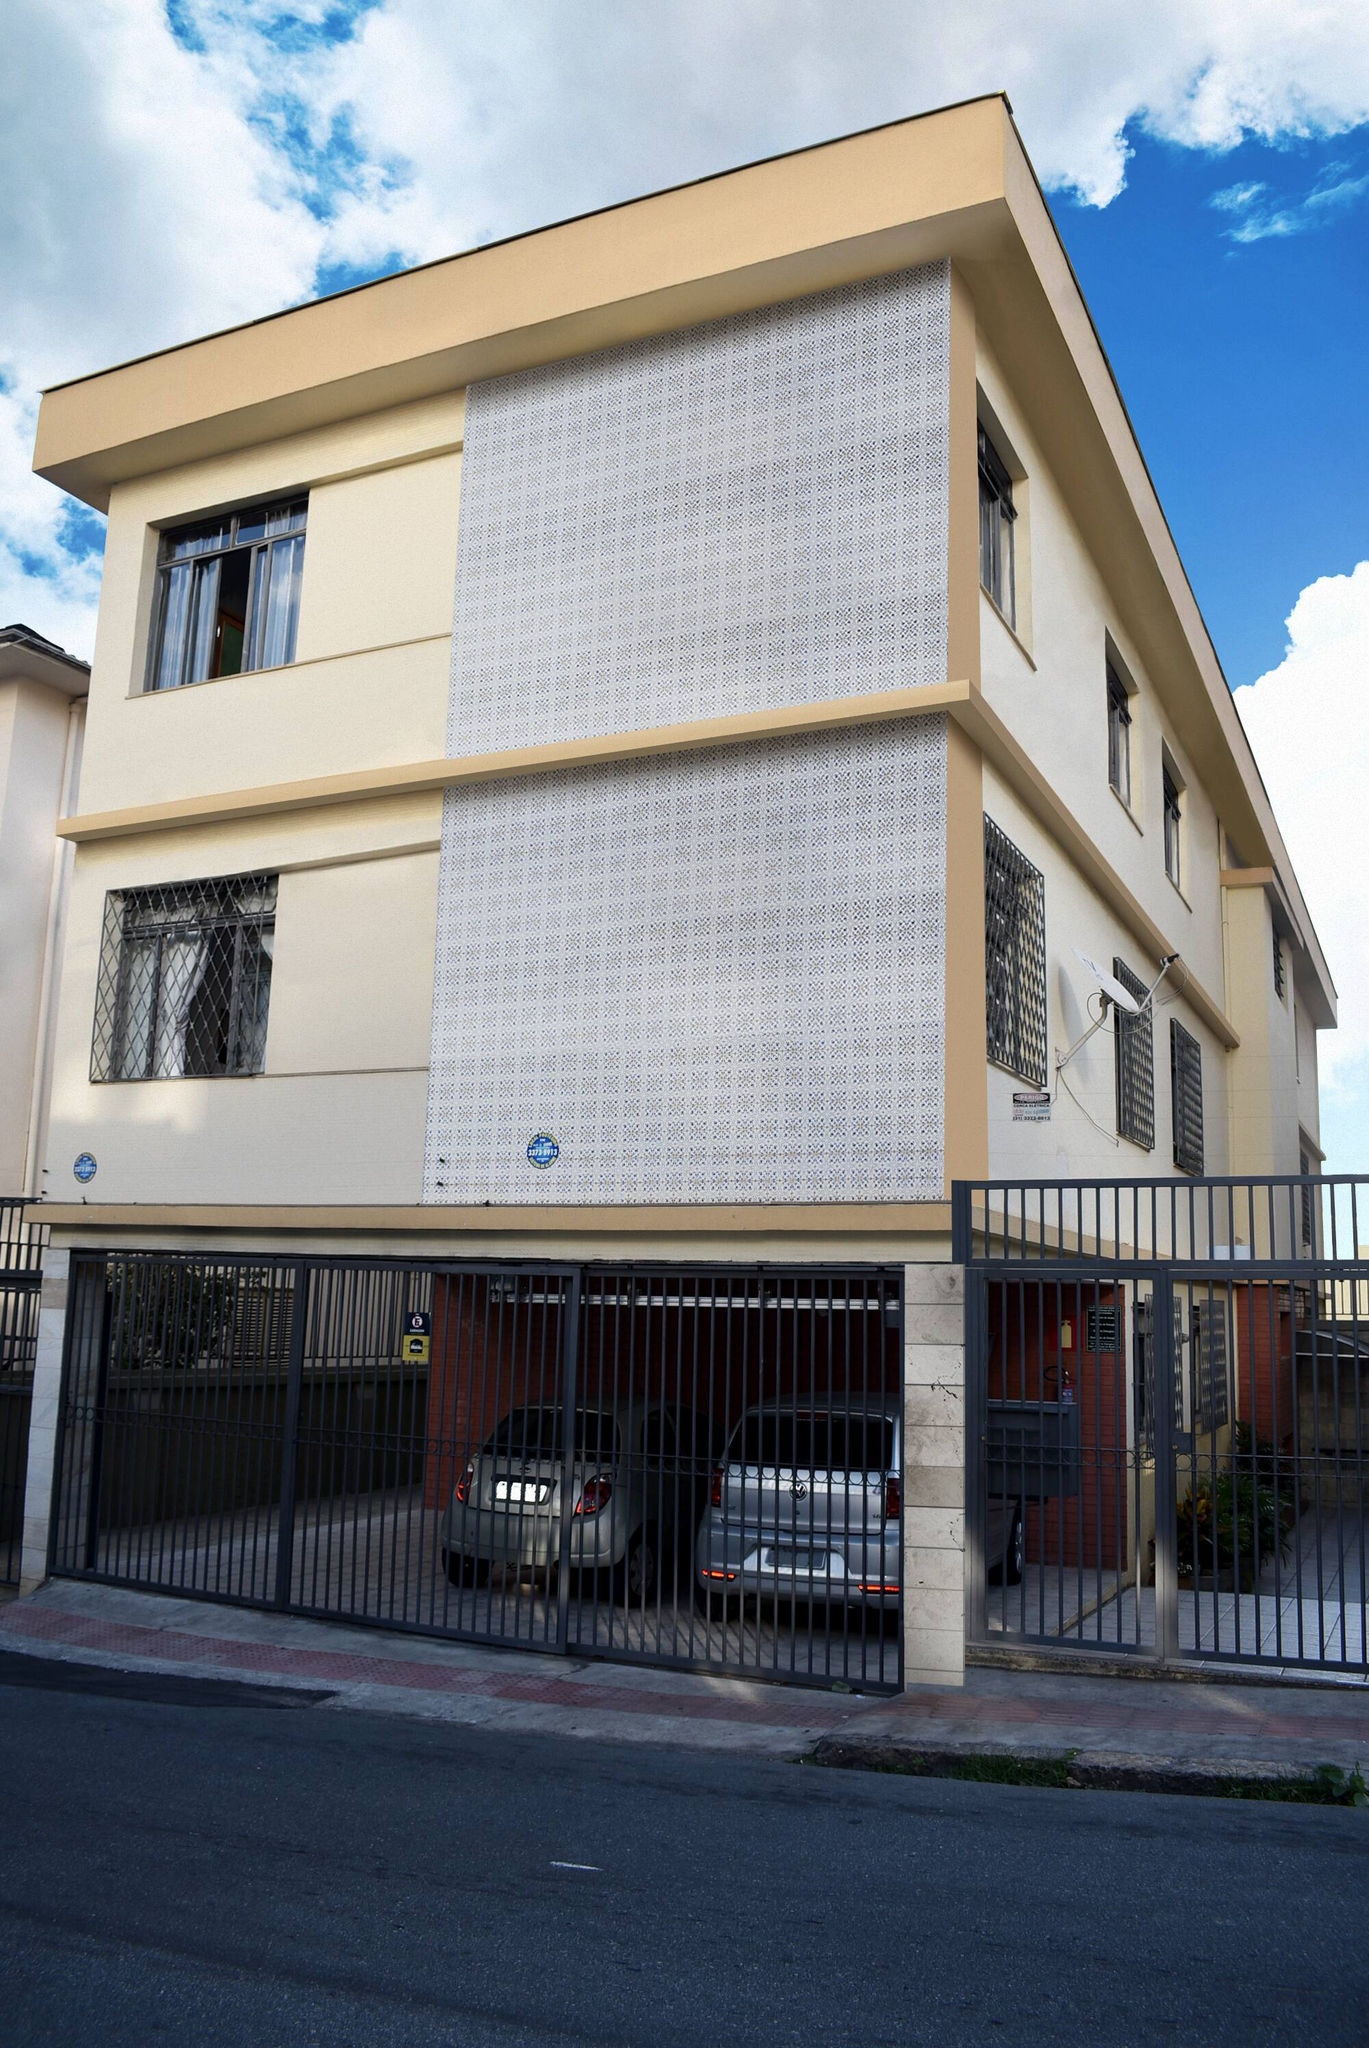 Imóvel rifado fica no bairro Santo Antônio, região Centro-Sul de BH. Apartamento de 67,65 m² tem dois quartos, sala, cozinha e dois banheiros